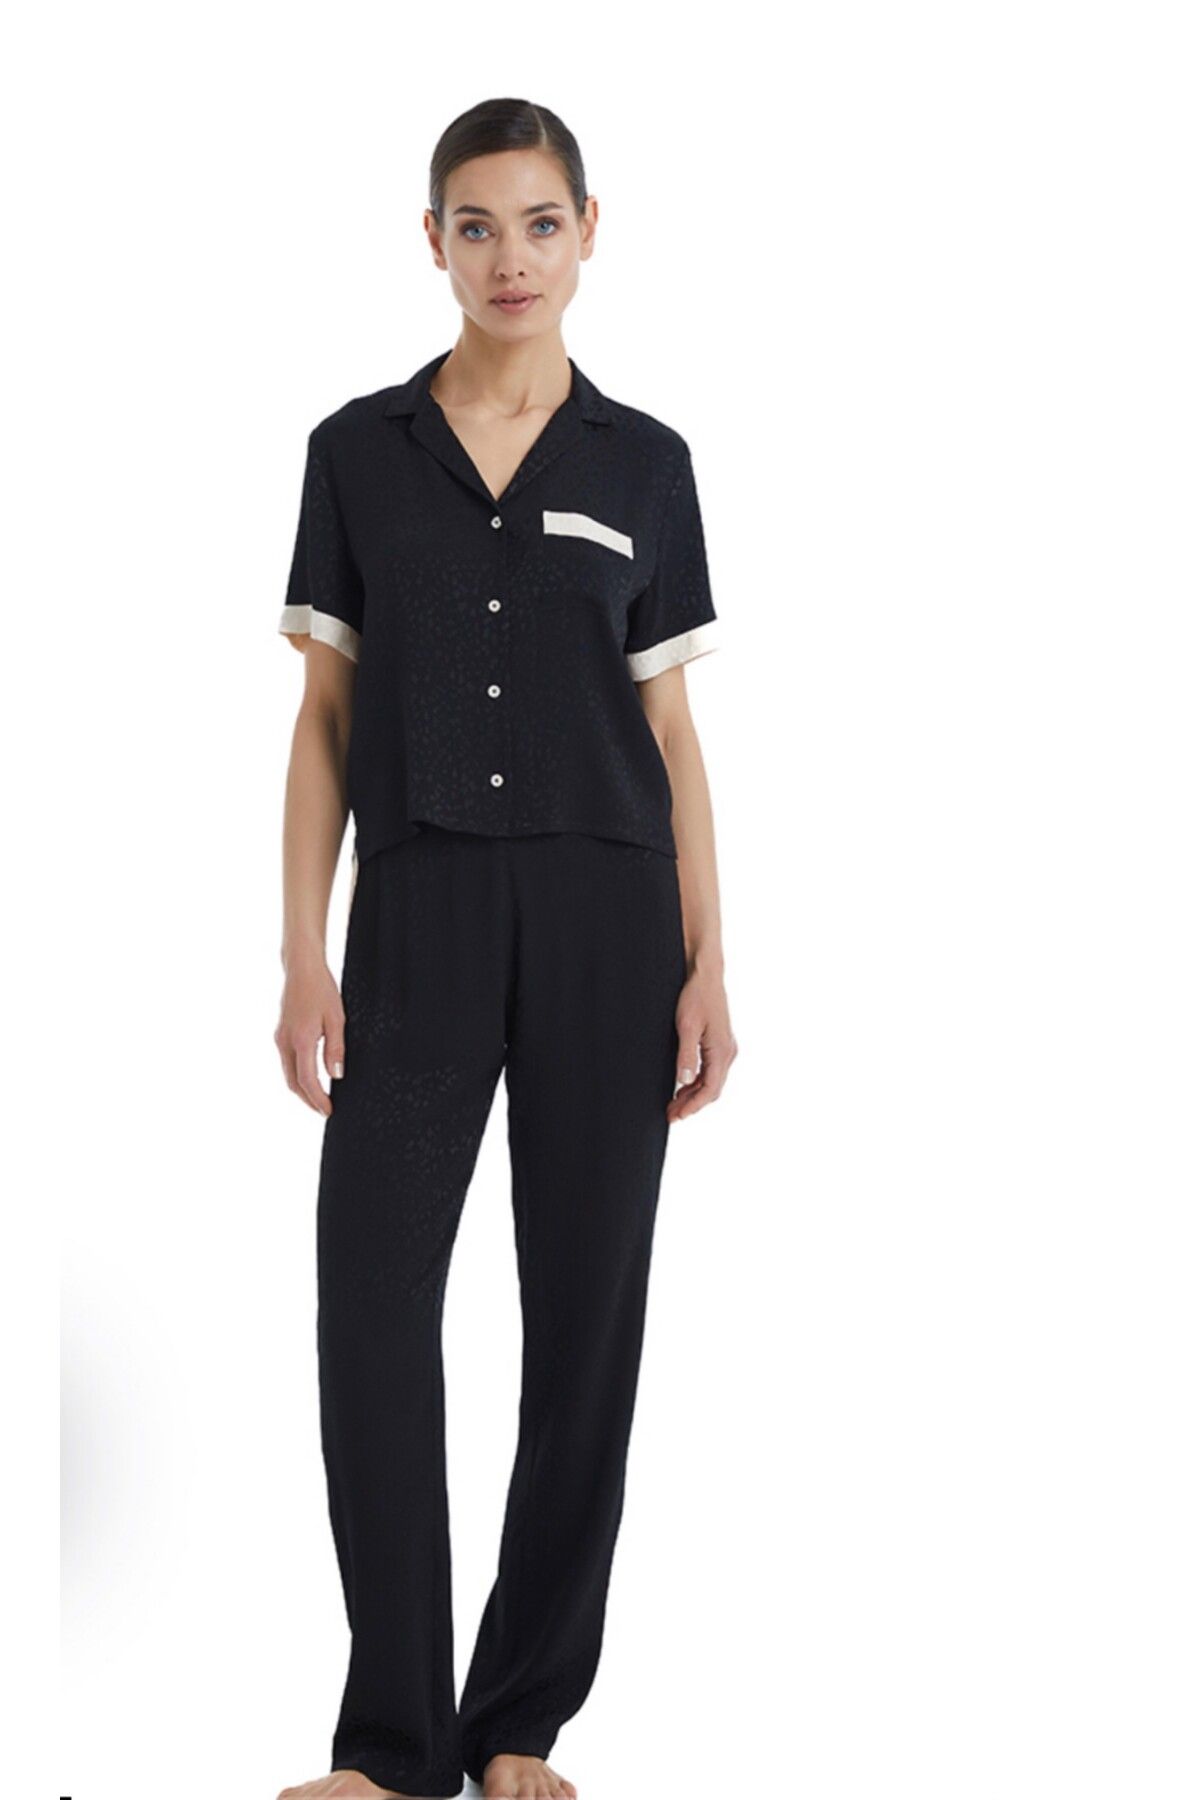 Blackspade -60366-Kadın Kısa Kollu Gömlek Yaka Pijama Takımı-Siyah